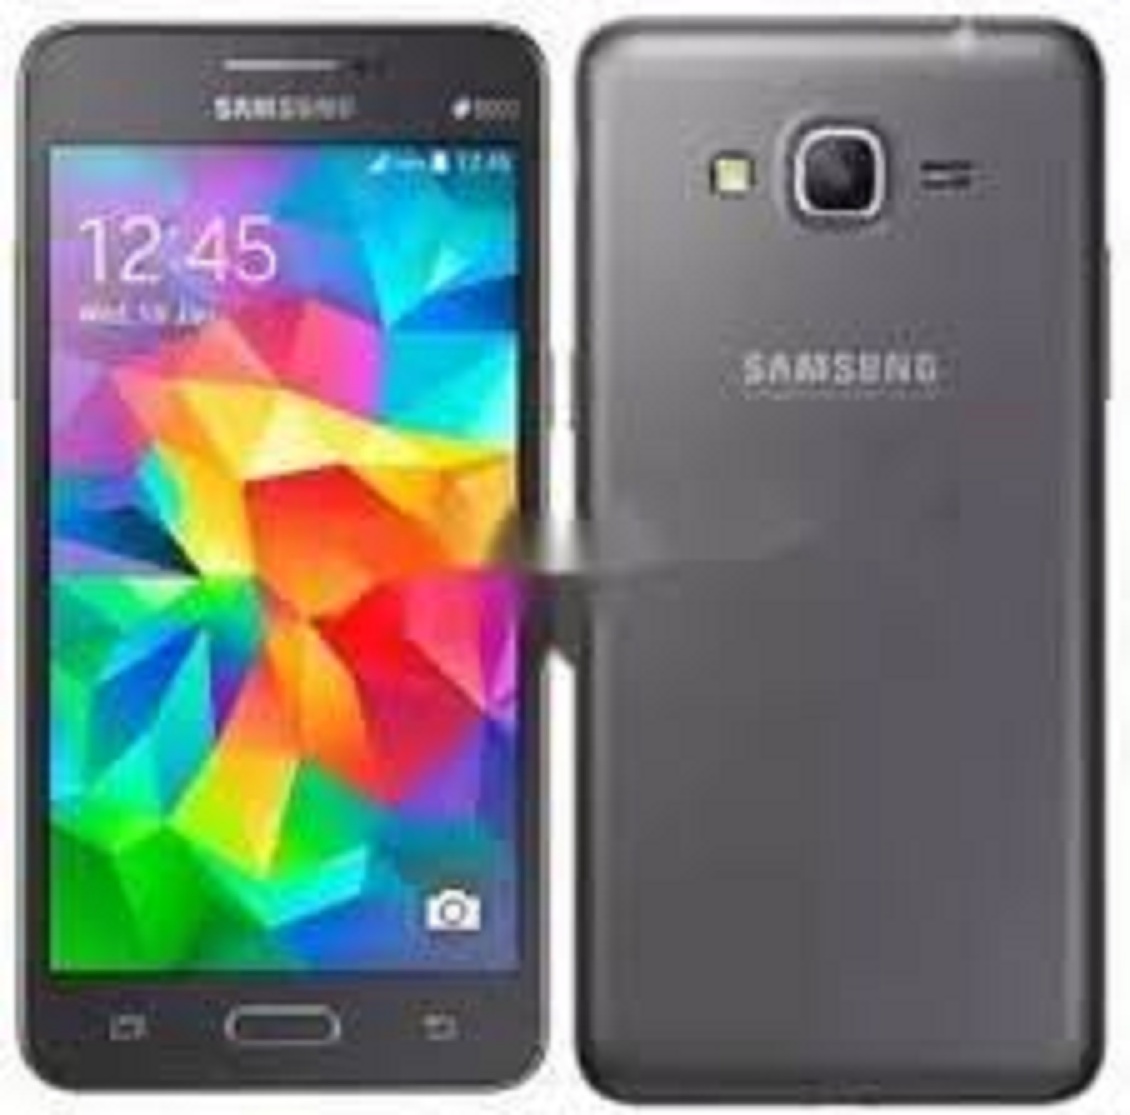 điện thoại Chữa Cháy làm máy phụ Samsung G530 - điện thoại Cảm ứng Samsung Galaxy Grand Prime G530 2sim Máy Chính Hãng, Cảm ứng mượt, nghe gọi tốt, FB Youtube chất - TTN 01